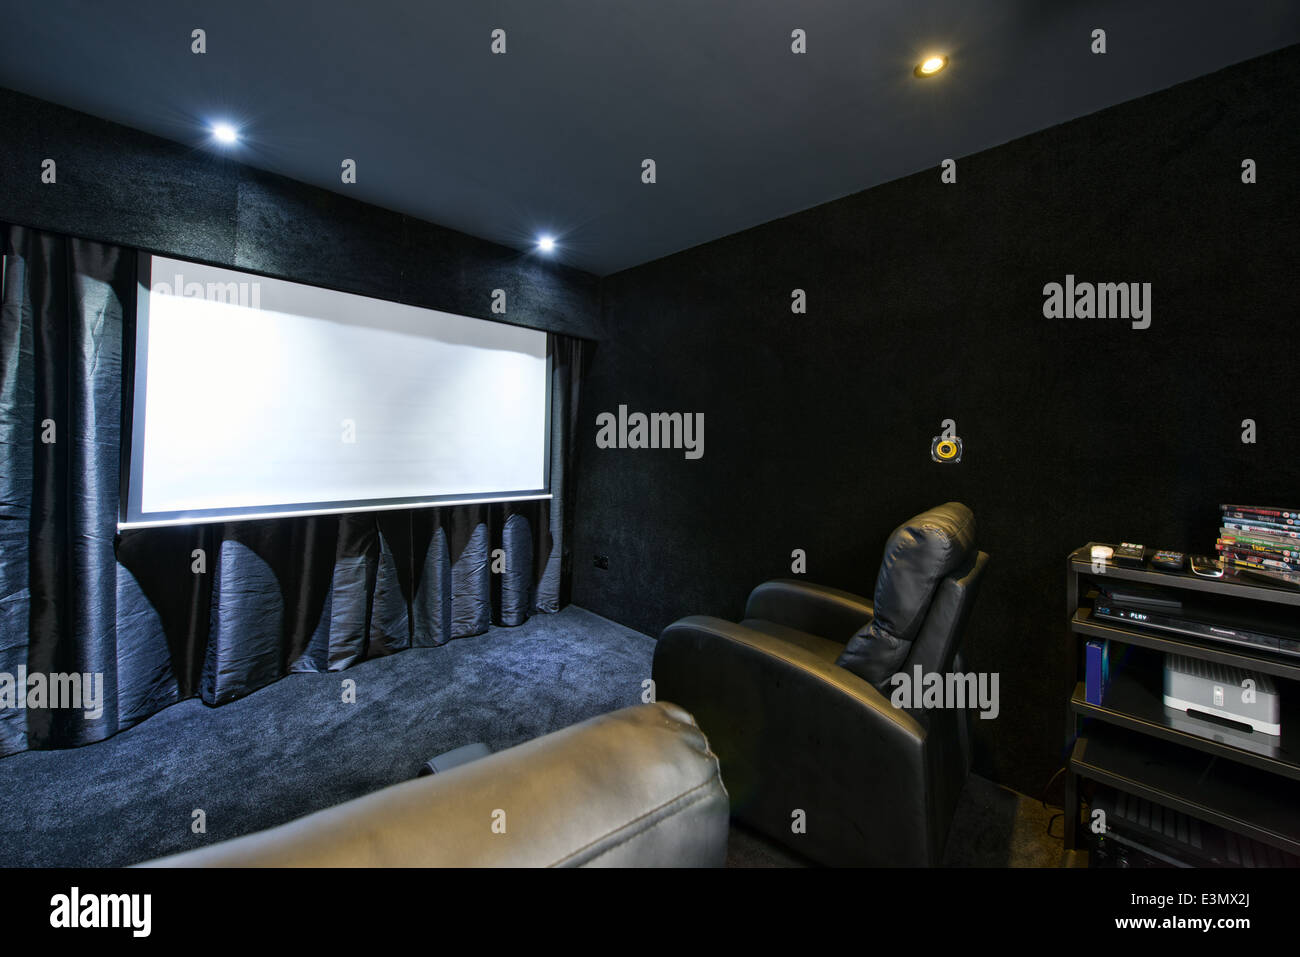 L'intérieur d'une branche de home cinéma théâtre entièrement équipées avec liste déroulante écran, projecteur HD & surround sound system Banque D'Images